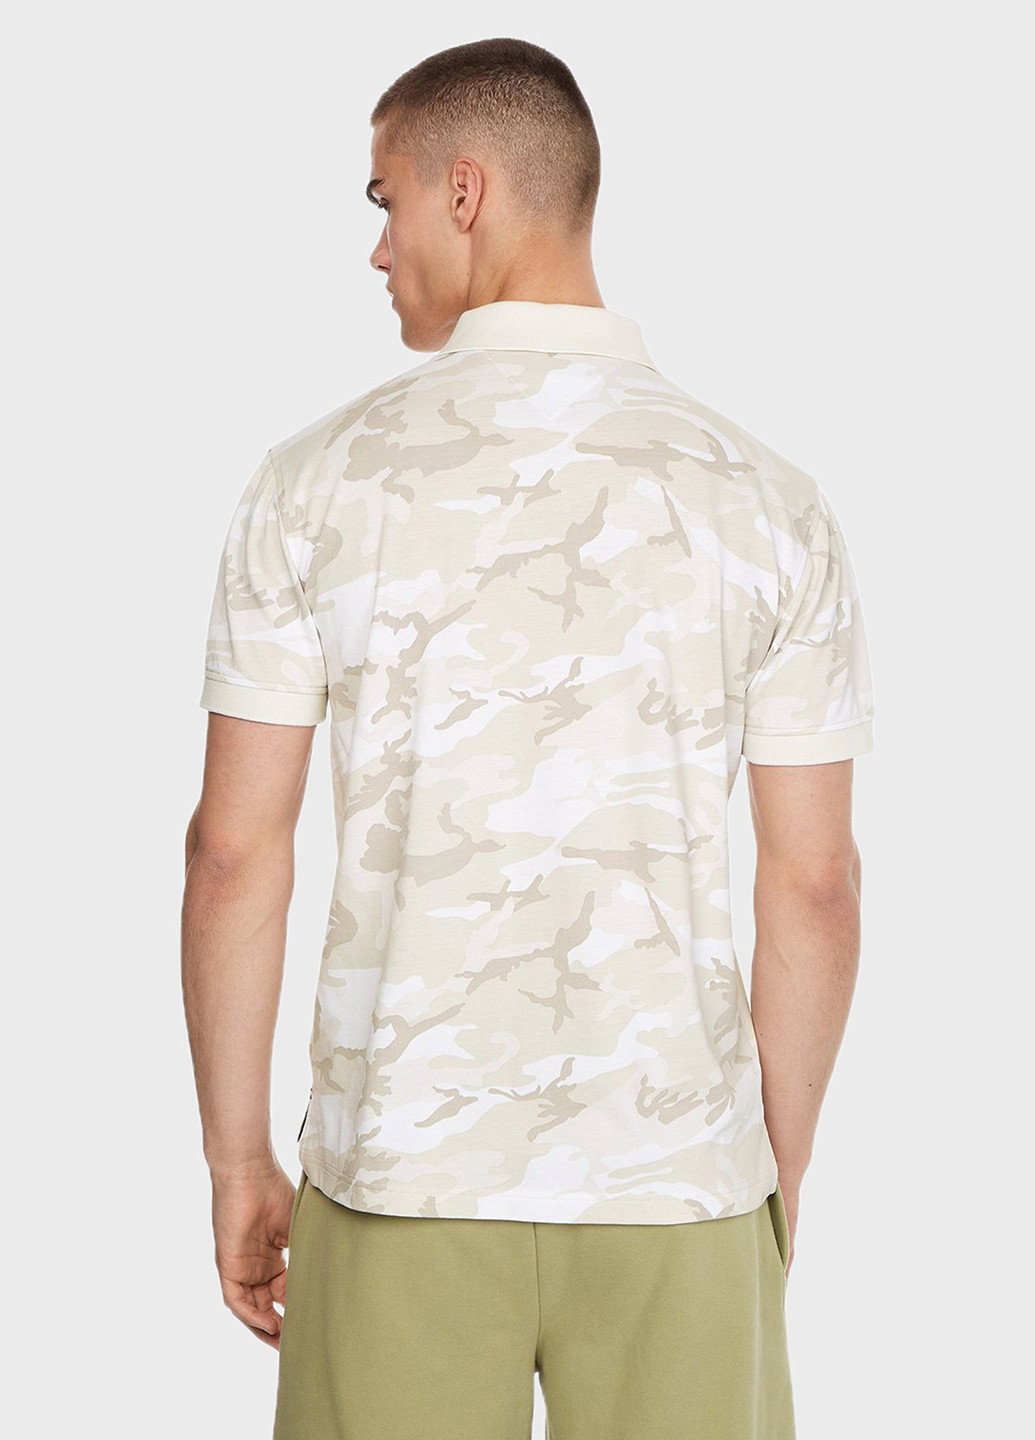 Бежевая футболка-поло для мужчин Tommy Hilfiger с камуфляжным принтом